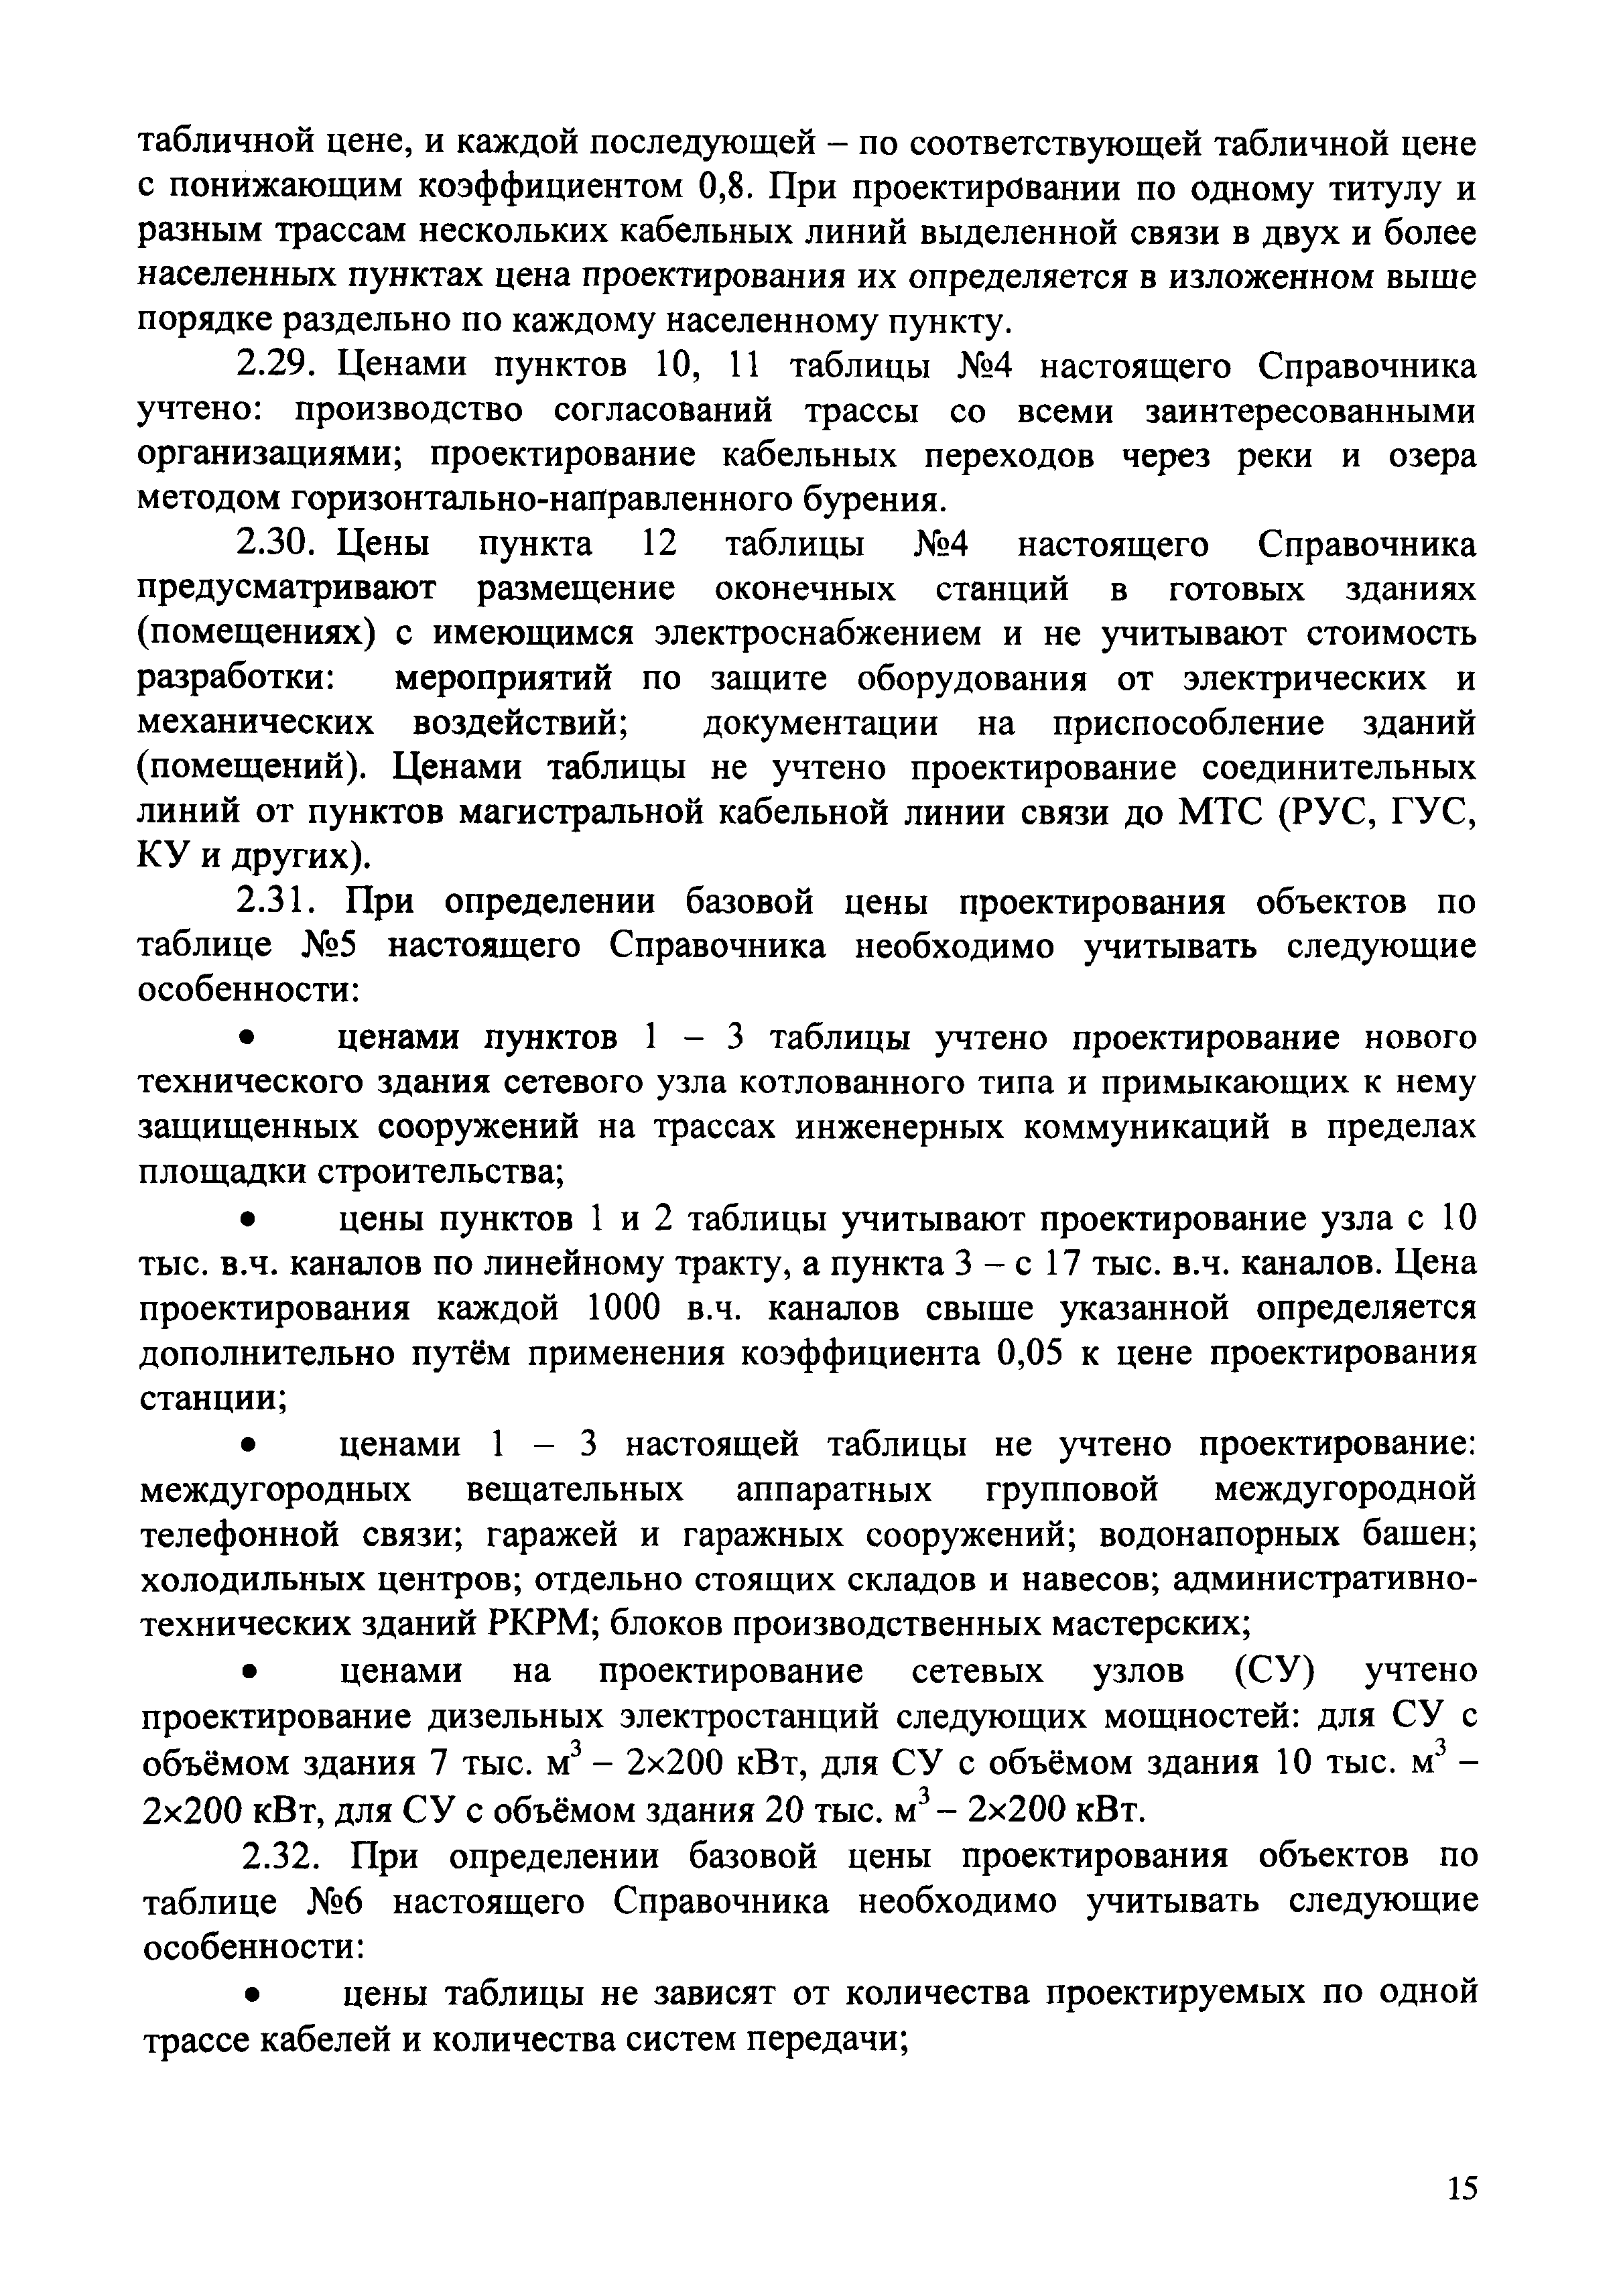 СБЦП 81-2001-02